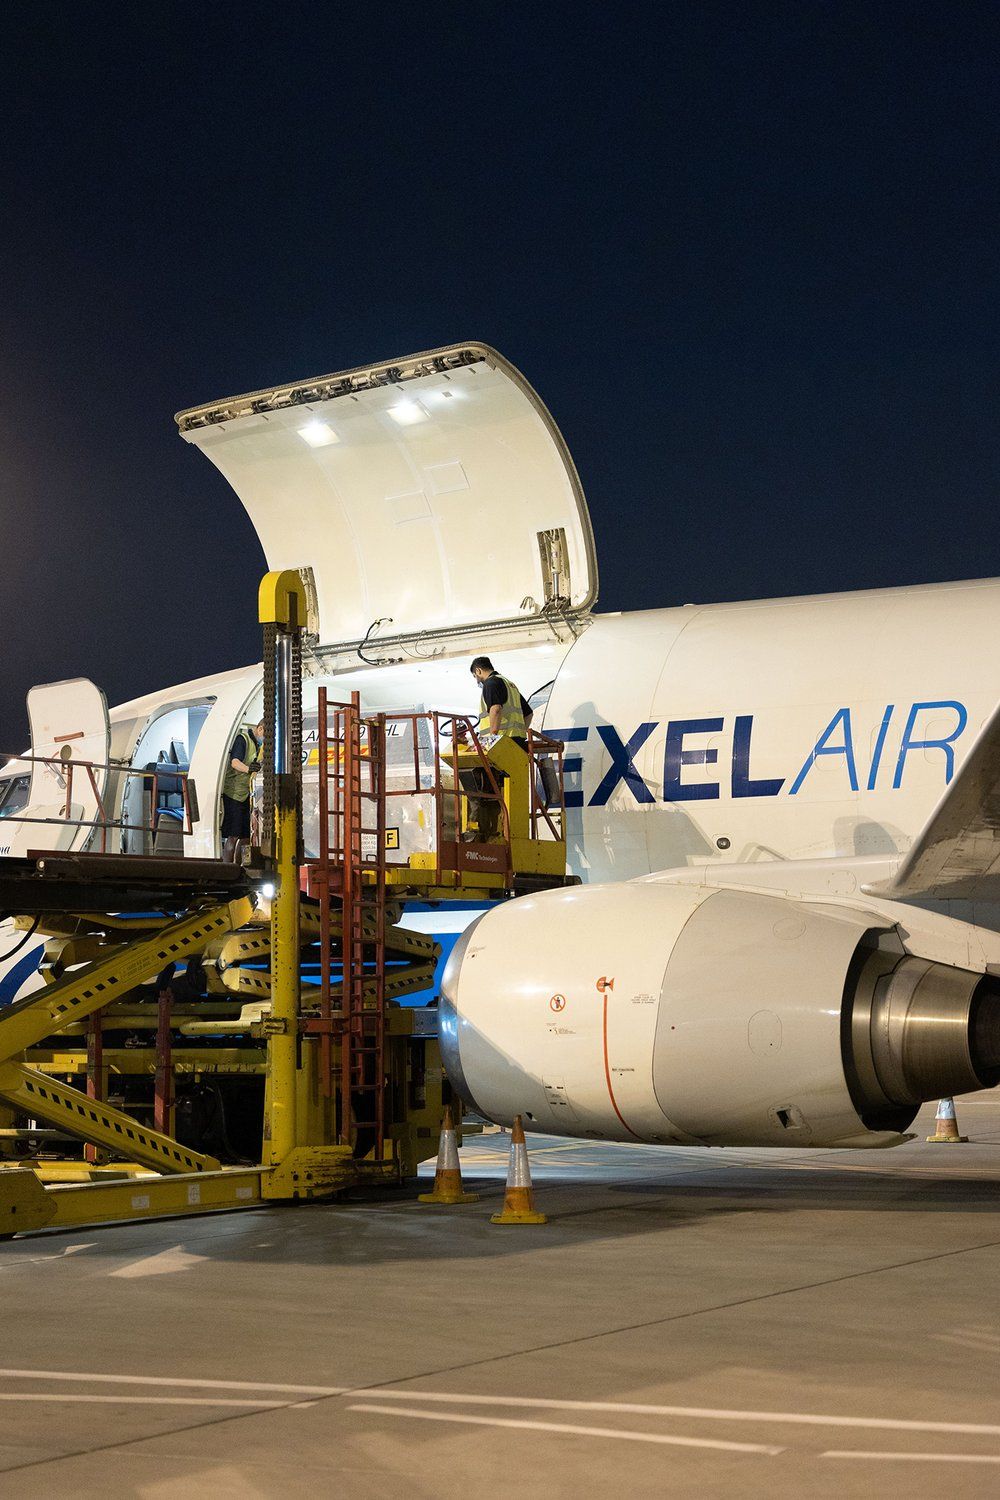 Texel Air 737 loading